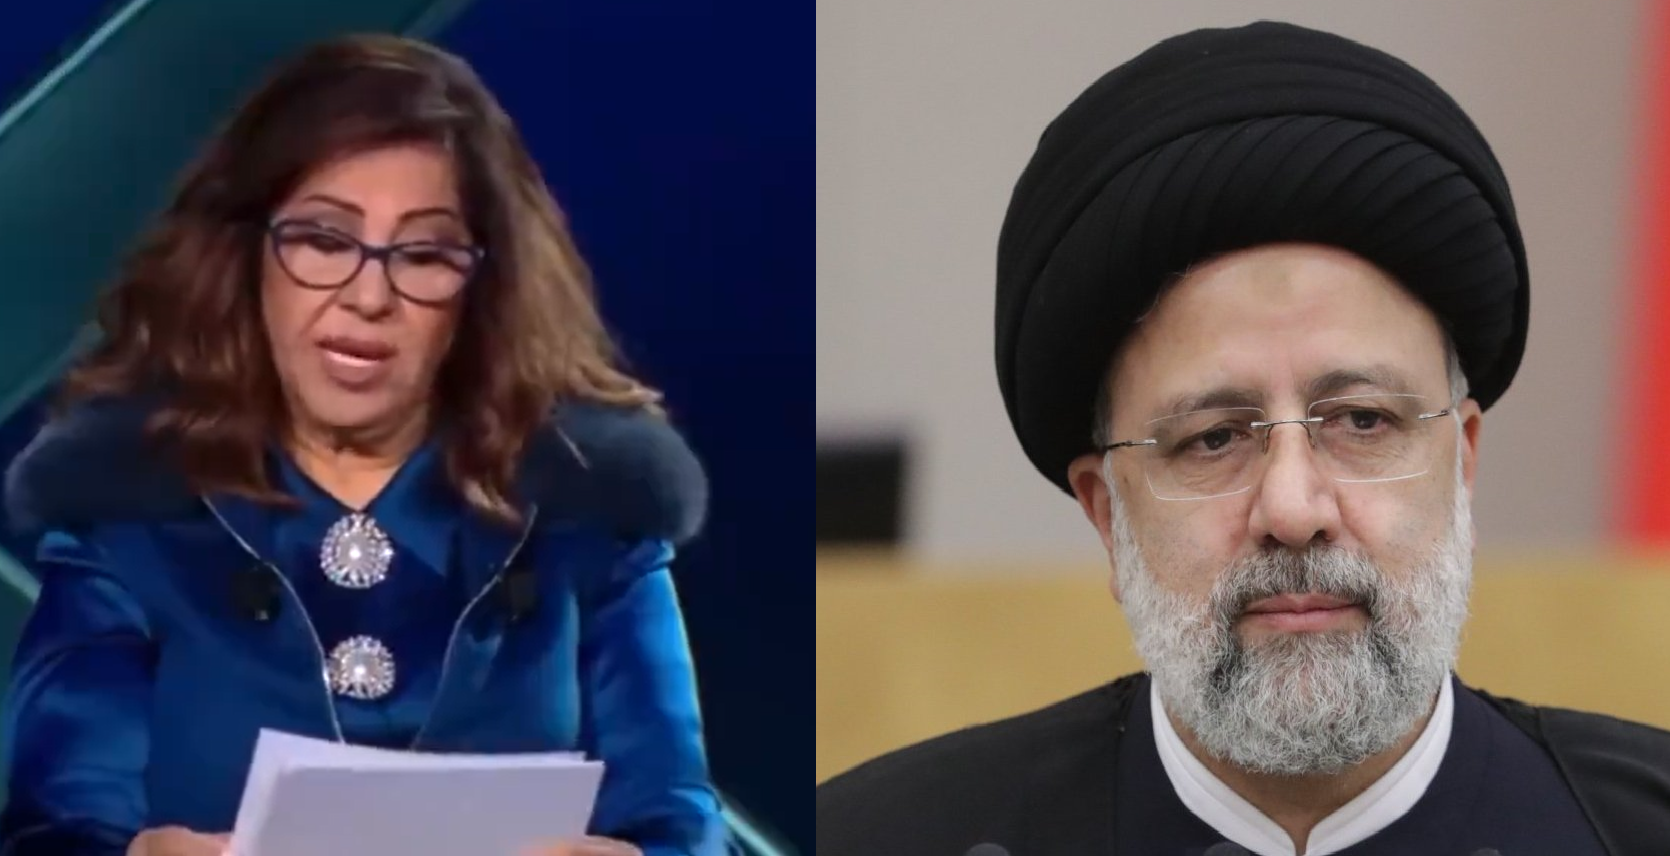 ليلى عبد اللطيف تنبأت بمقتل الرئيس الإيراني وسقوط طائرته! (فيديو)